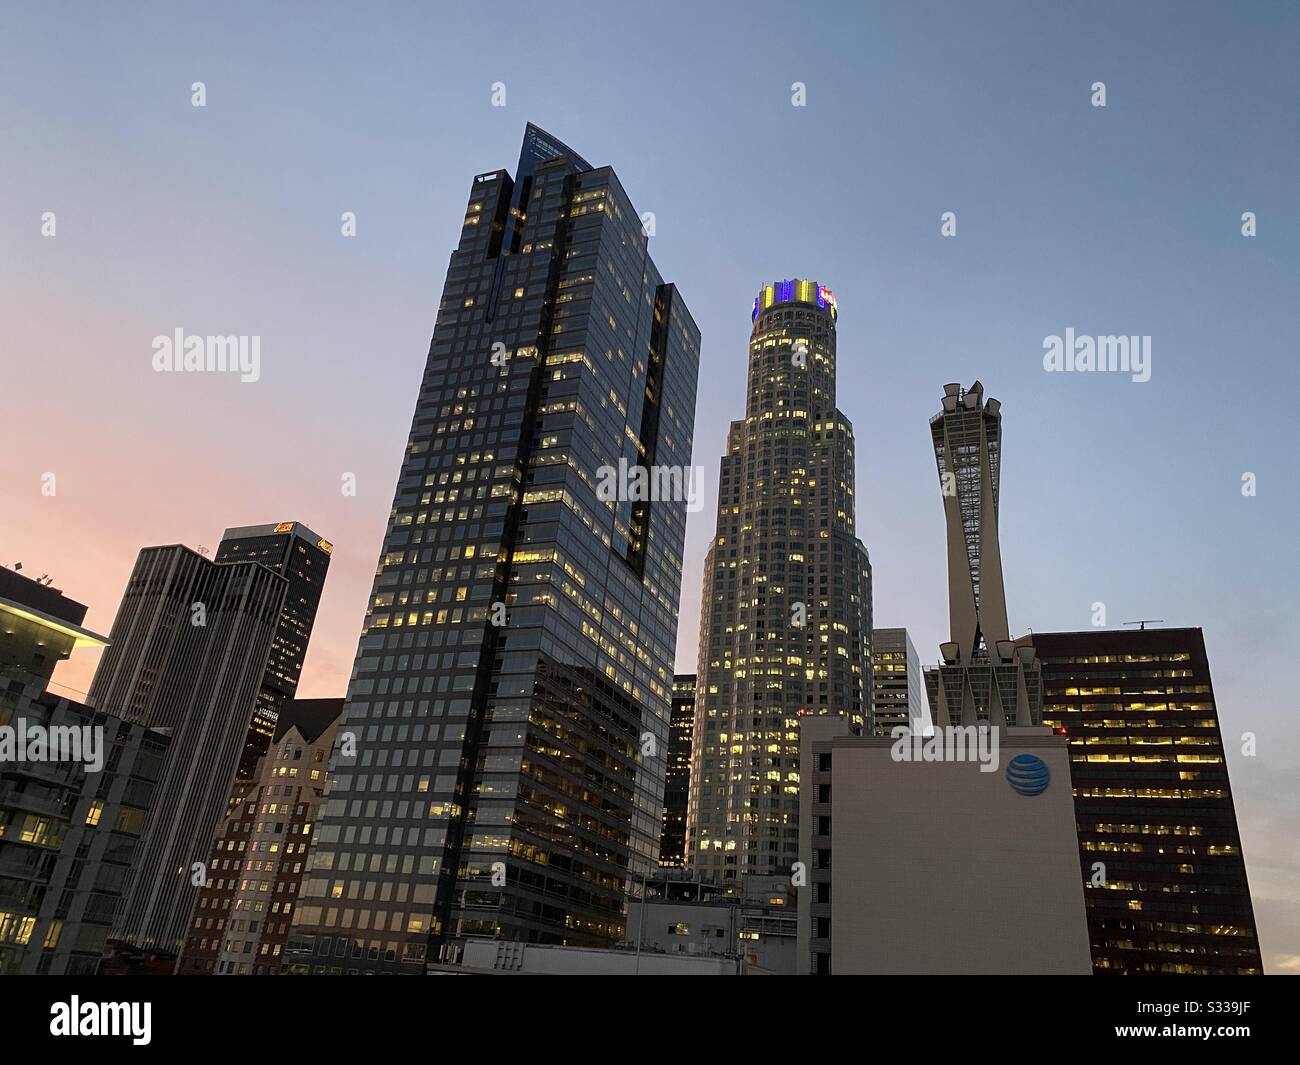 Los ANGELES, CA, JANUAR 2020: Wolkenkratzer in der Innenstadt in der Abenddämmerung mit Lichtern auf dem US Bank Tower, die violett und gelb zeigen, La Lakers Basketballteam Farben in Erinnerung an Spieler Kobe Bryant Stockfoto